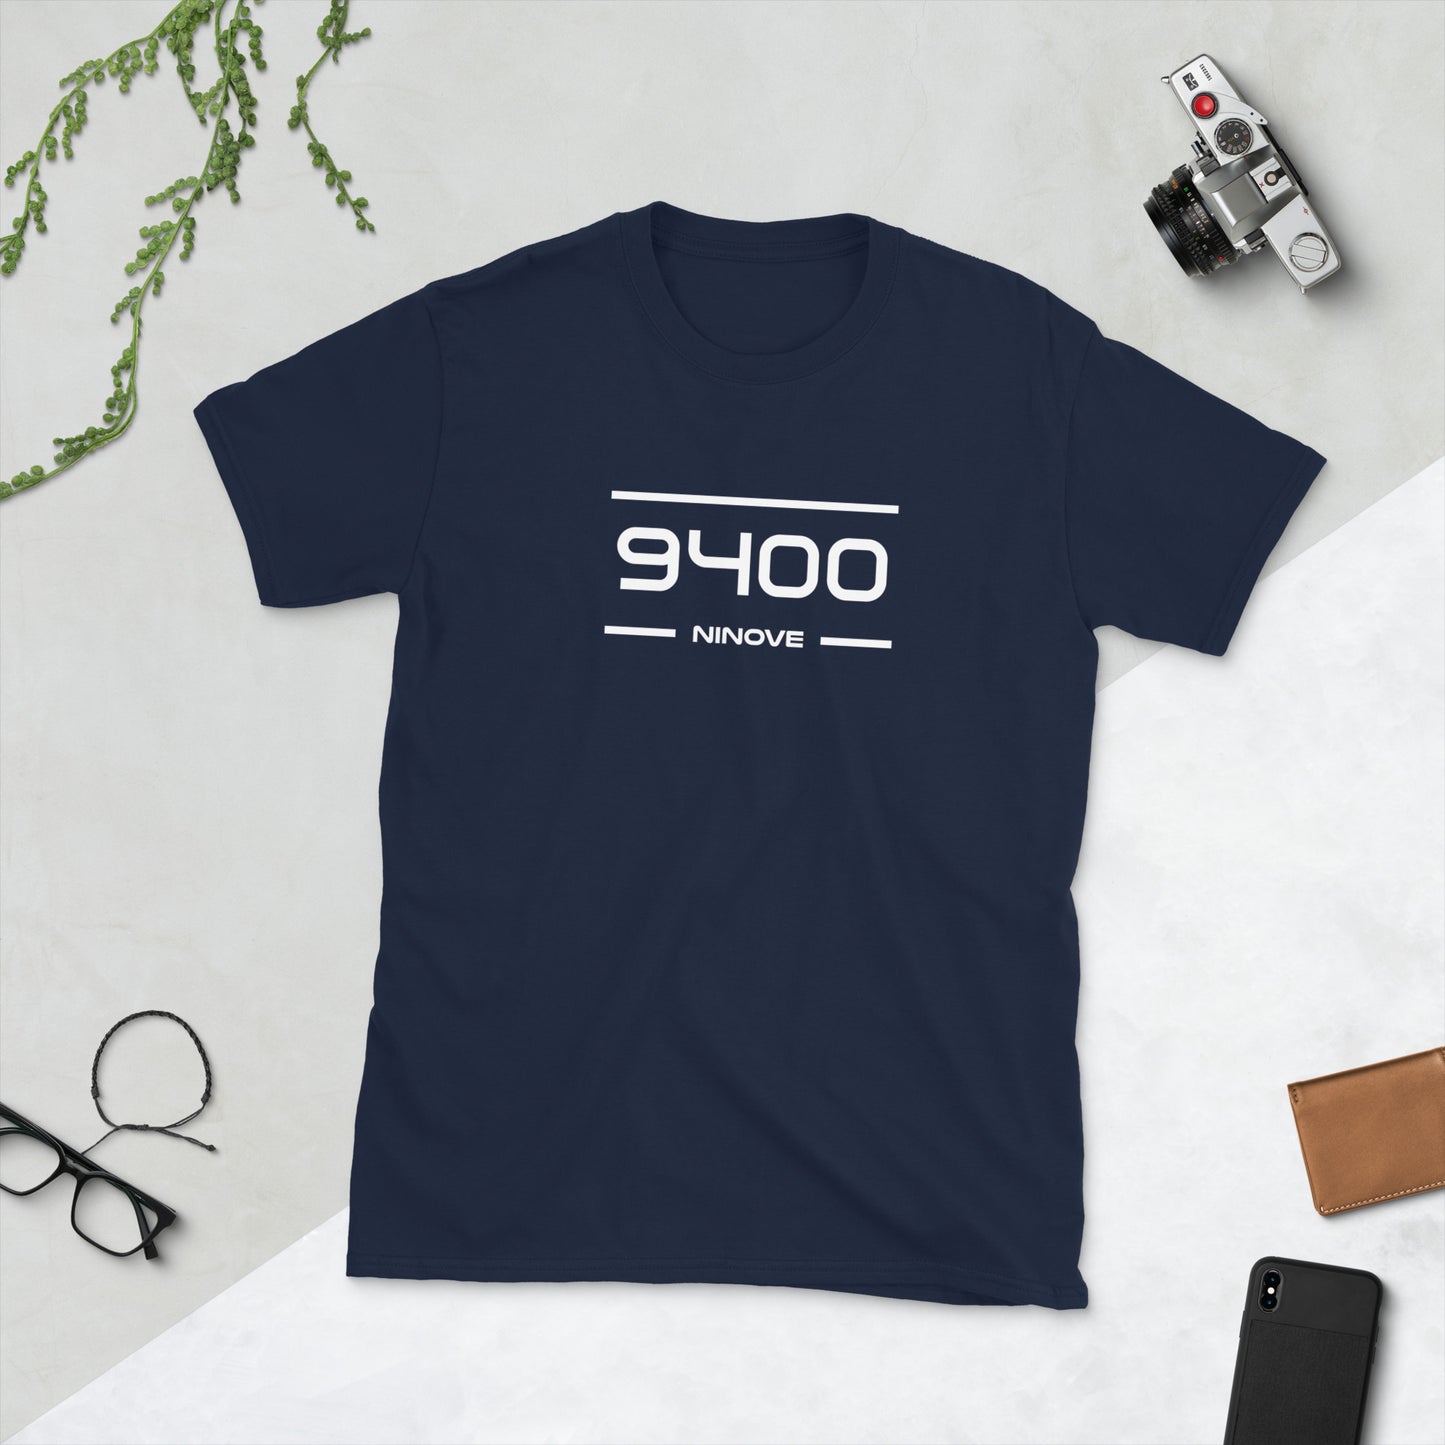 T-Shirt - 9400 - Ninove